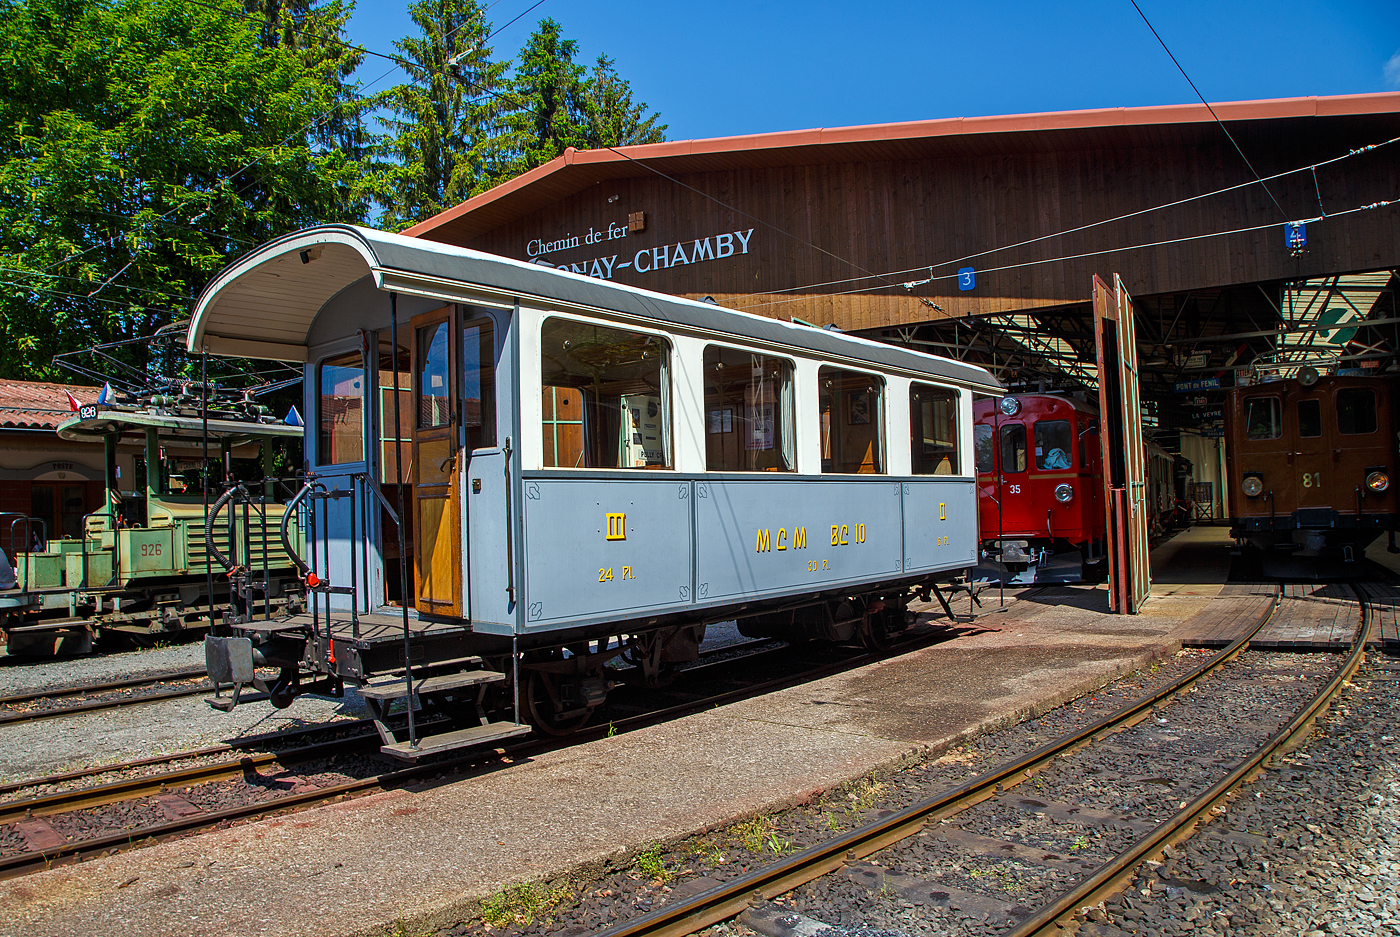 Auch ein Wagen der meterspurigen ehemaligen Monthey–Champéry–Morgins-Bahn, später Aigle-Ollon-Monthey-Champéry-Bahn (AOMC), seit 1999 (wie auch die AL, ASD und BVB) zur der heutigen Transports Publics du Chablais (TPC).

Der zweiachsige  2./3. Klasse Großraumwagen MCM  BC² 10 am 27.05.2023 im Museumsareal in Chaulin der Museumsbahn Blonay–Chamby.

Der Wagen wurde 1908, zur Betriebseröffnung der meterspurigen Monthey-Champéry-Morgins-Bahn (MCM), von der Schweizerischen Industrie-Gesellschaft (SIG) in Neuhausen am Rheinfall gebaut. Anlässlich der 100-Jahres-Feier der Aigle–Ollon–Monthey–Champéry-Bahn im Jahre 2008 kehrte er (als kurzer Gast) auf seine Stammstrecke zurück und wurde bei den Transports Publics du Chablais (TPC) in En Châlex zusammen mit dem elektrischen Personentriebwagen mit Gepäckabteil für den gemischten Zahnrad- und Adhäsionsbetrieb BCFeh 4/4 6 aufgearbeitet. 

TECHNISCHE DATEN:
Hersteller: SIG, Neuhausen
Baujahr: 1908
Spurweite: 1.000 mm
Anzahl der Achsen: 2
Länge über Puffer : 8.700 mm
Länge Wagenkasten: 7.800 mm (mit Plattformen)
Breite: 2.400 mm
Achsabstand: 4.500 mm
Eigengewicht: 6,4 t
Sitzplätze: 6 (2. Klasse) und 24 (3. Klasse)